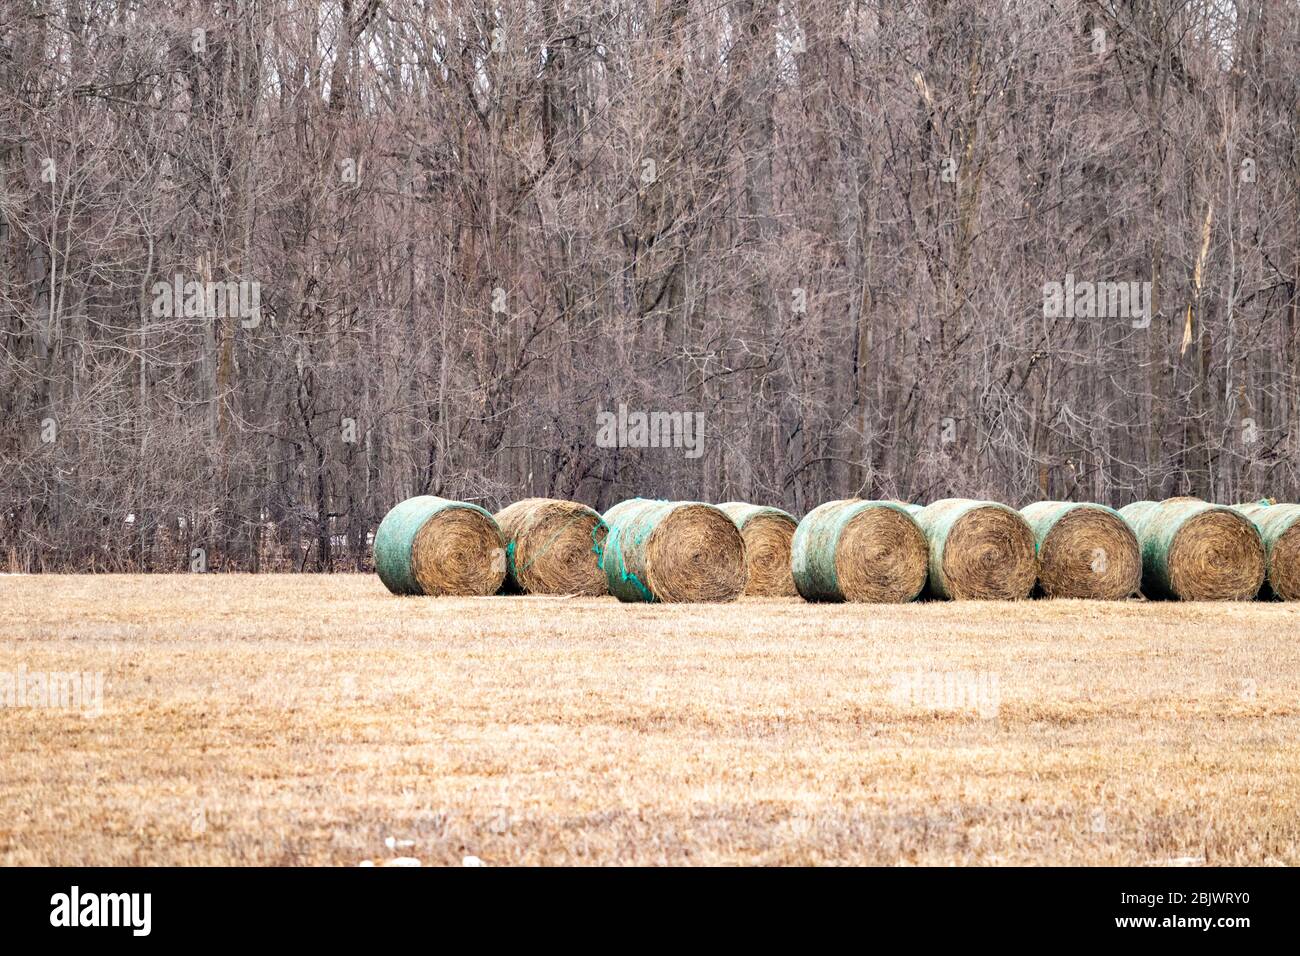 Diversi rotoli, o balle rotonde, di fieno si trovano in un campo agricolo di fronte ad una zona boscosa in inverno. Foto Stock